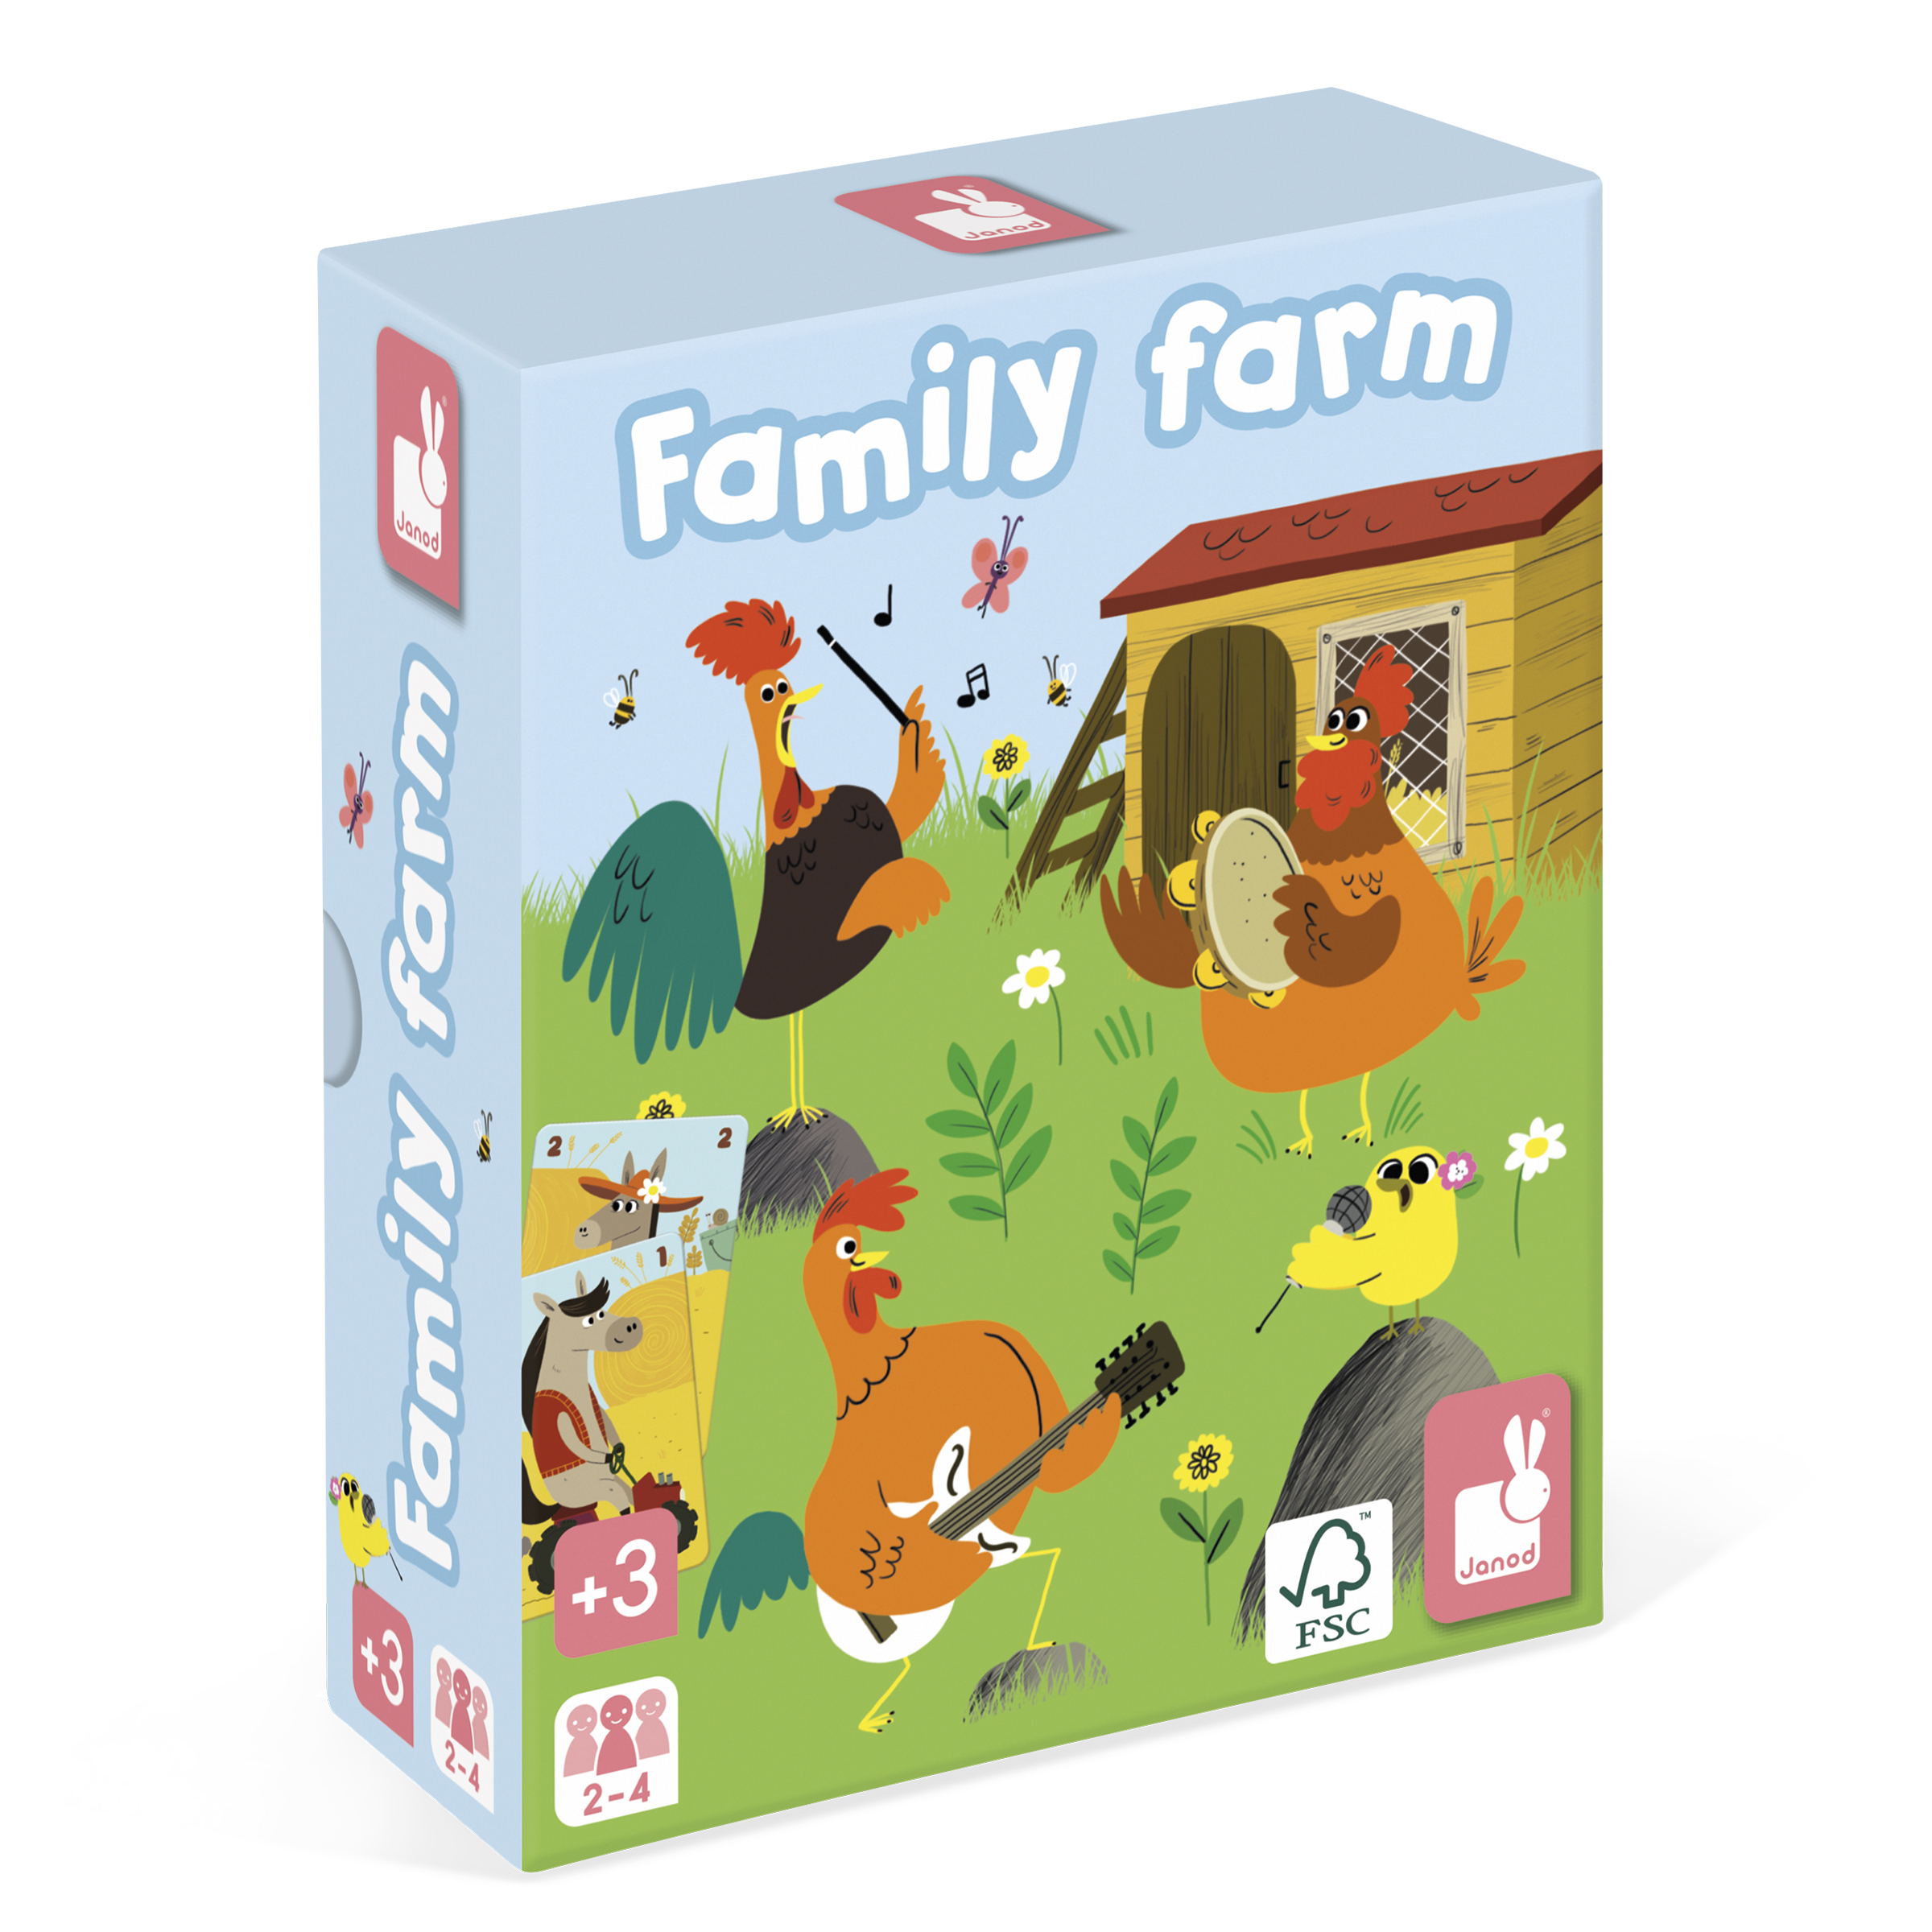 J02756_Jeu_7_familles_Family_farm_11